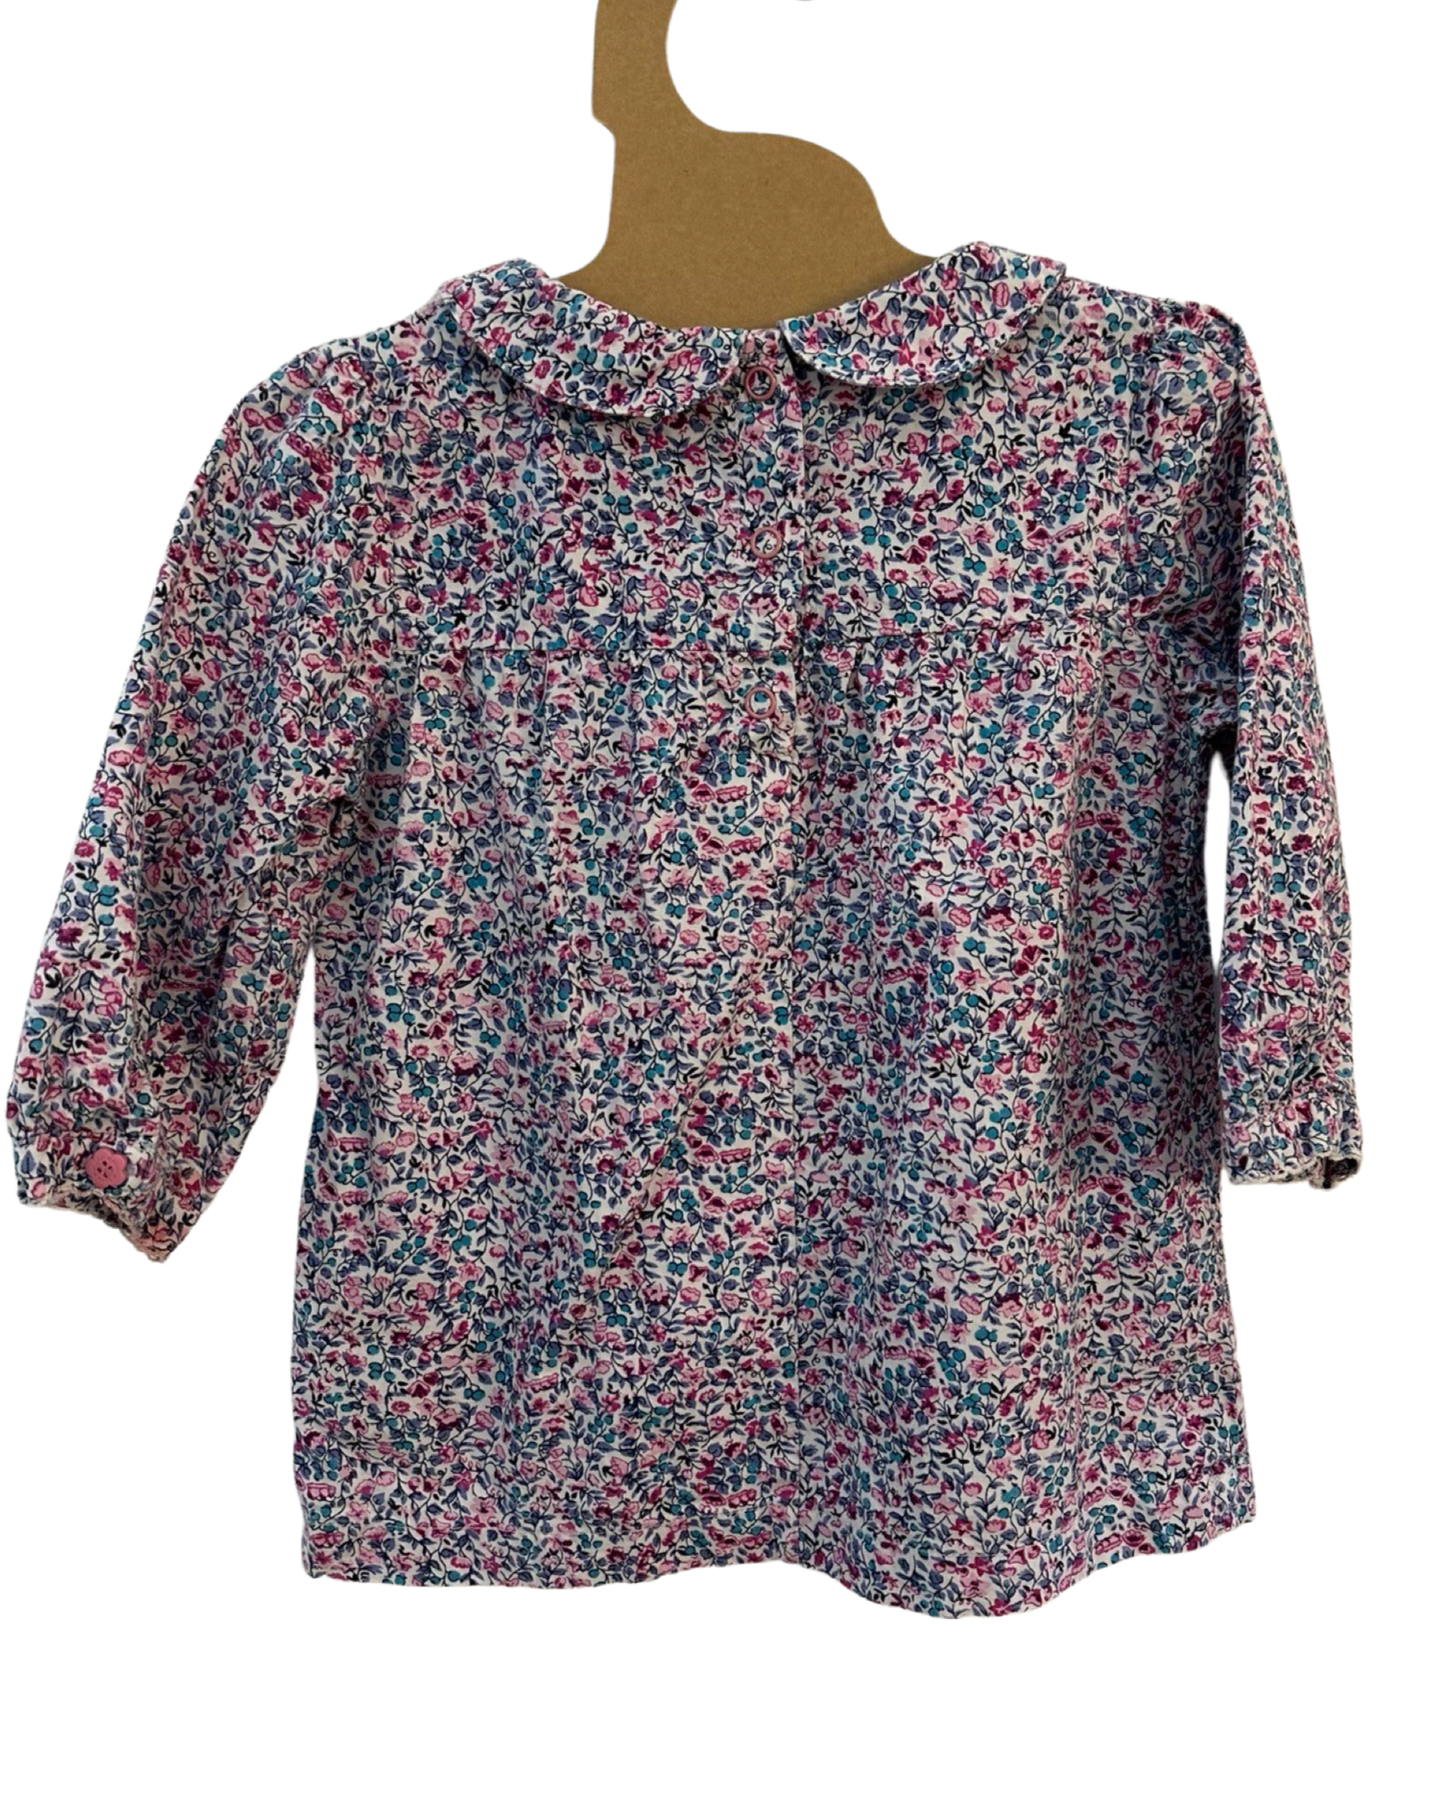 JoJo Maman Bebe ditzy floral print blouse (size 3-4yrs)